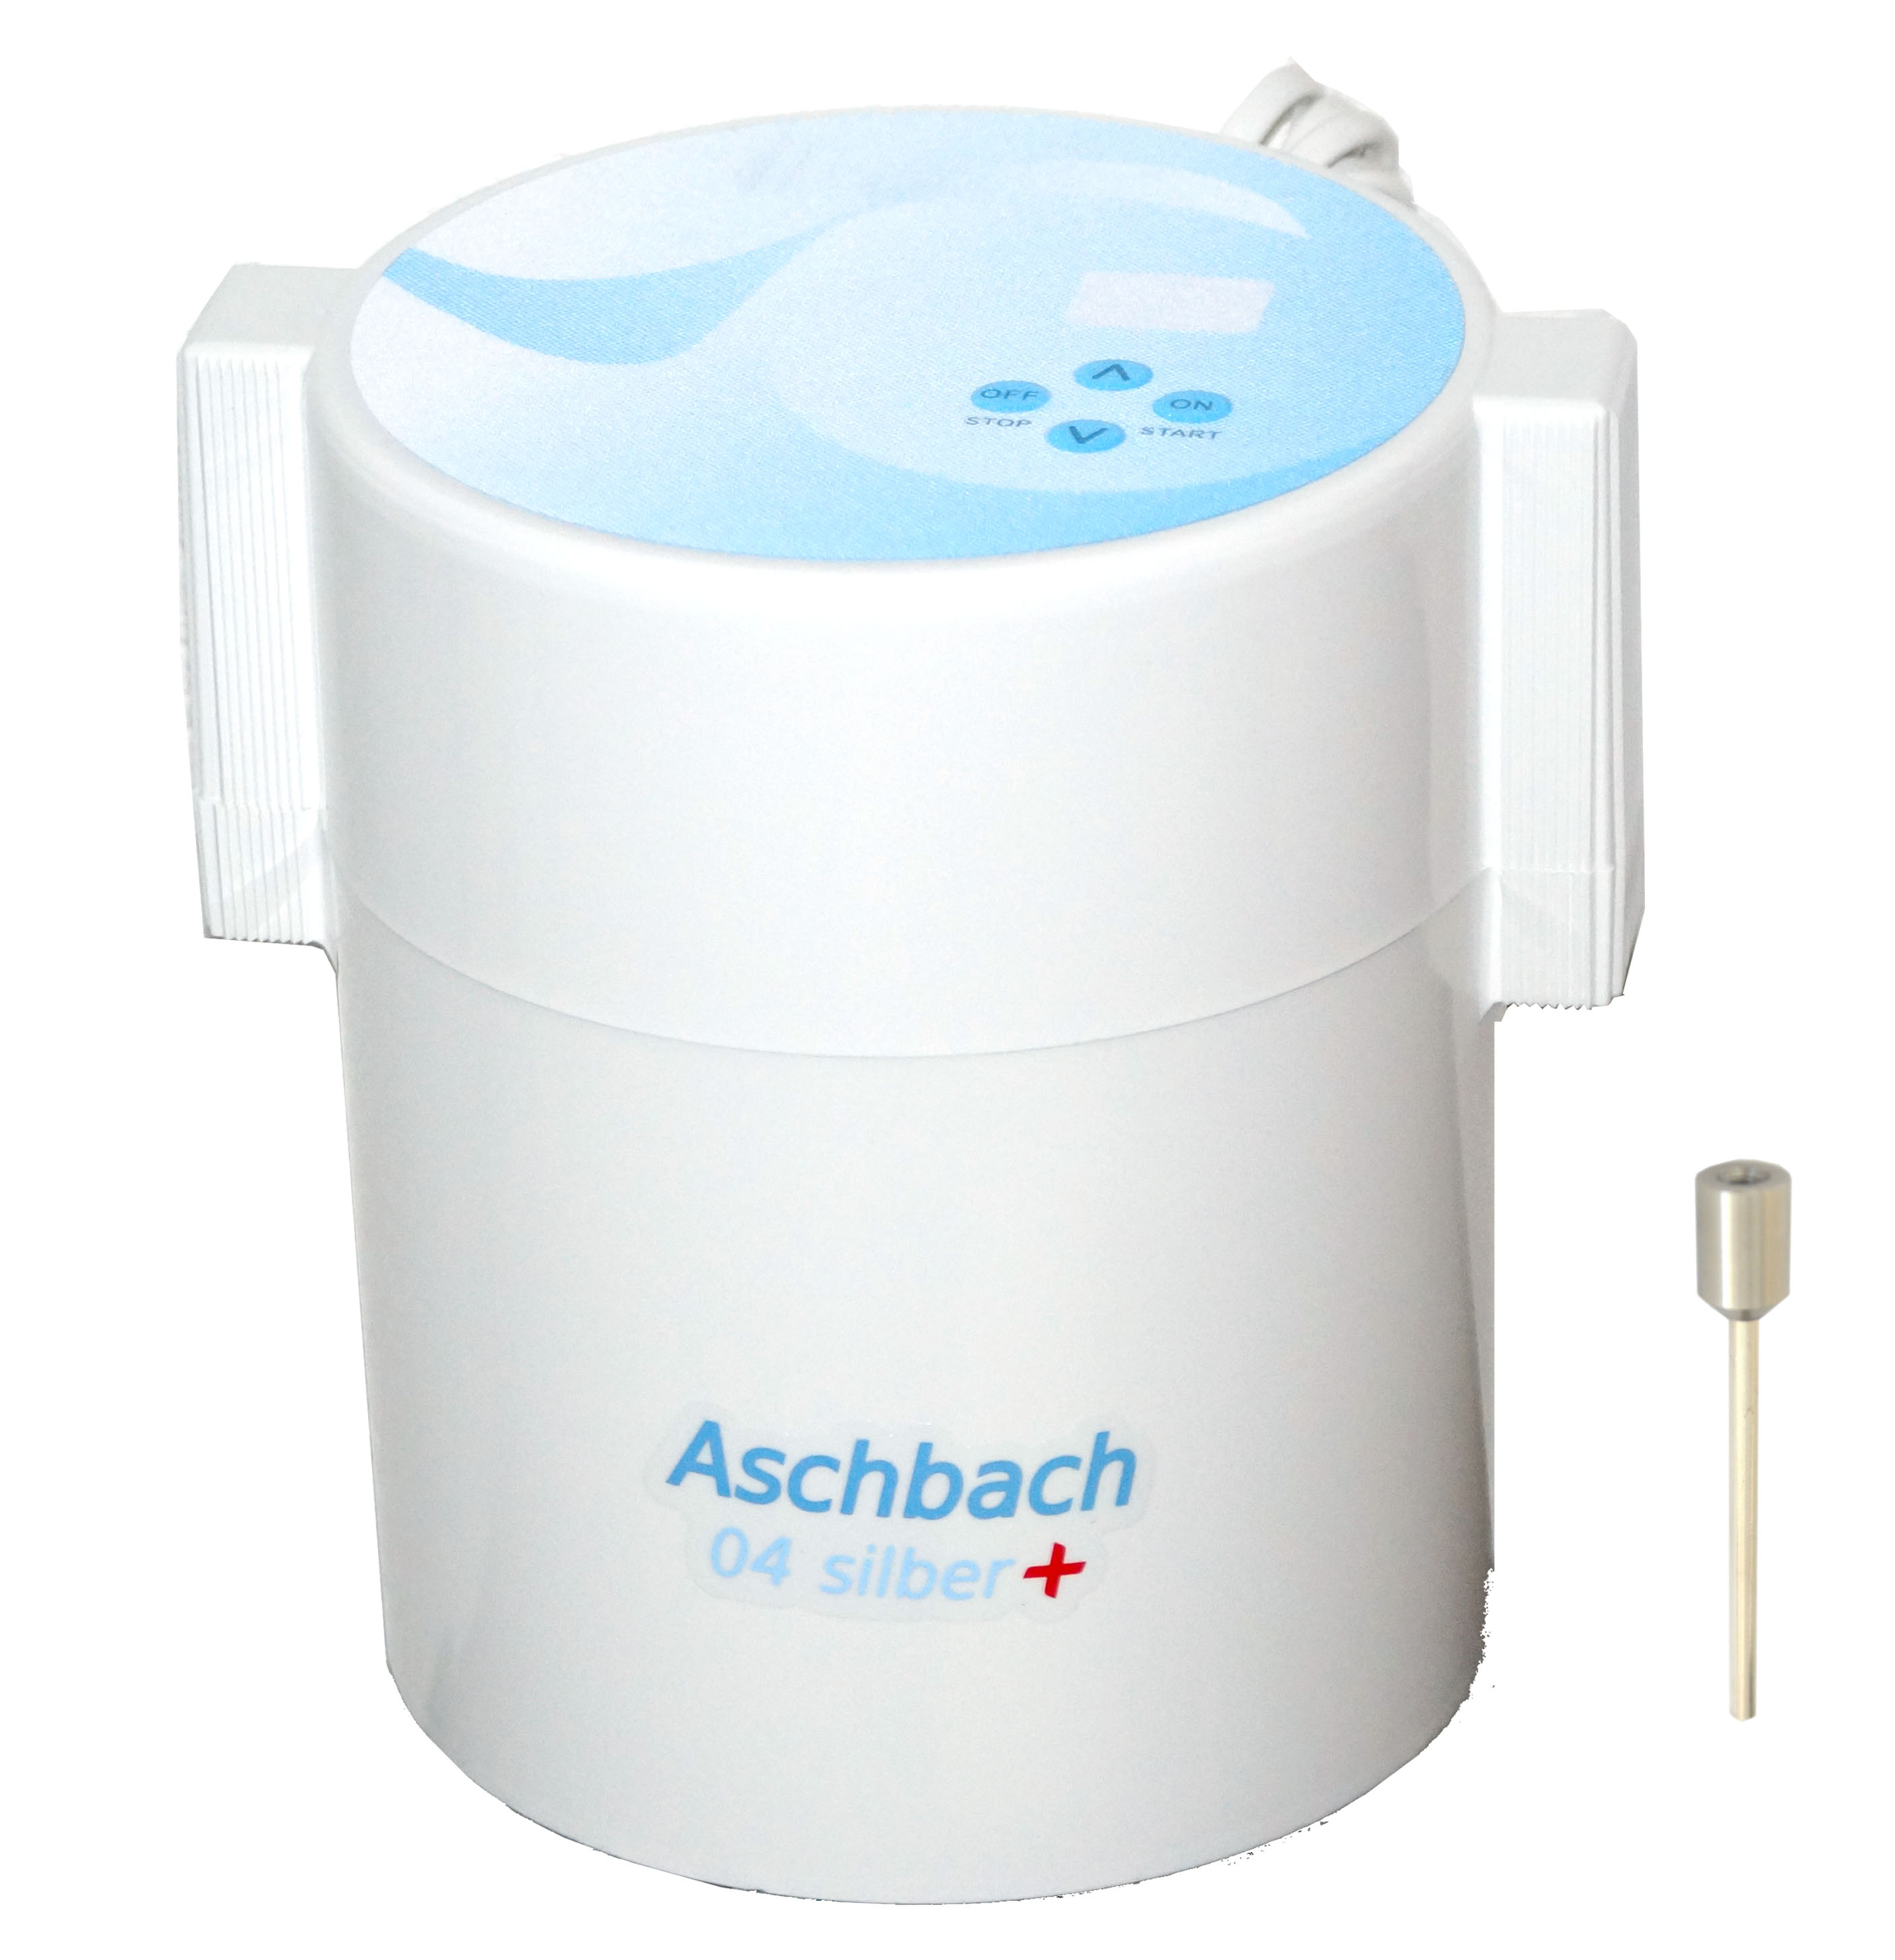 Электроактиватор, электролизер, ионизатор воды «aQuator Ашбах 04» серебрянный